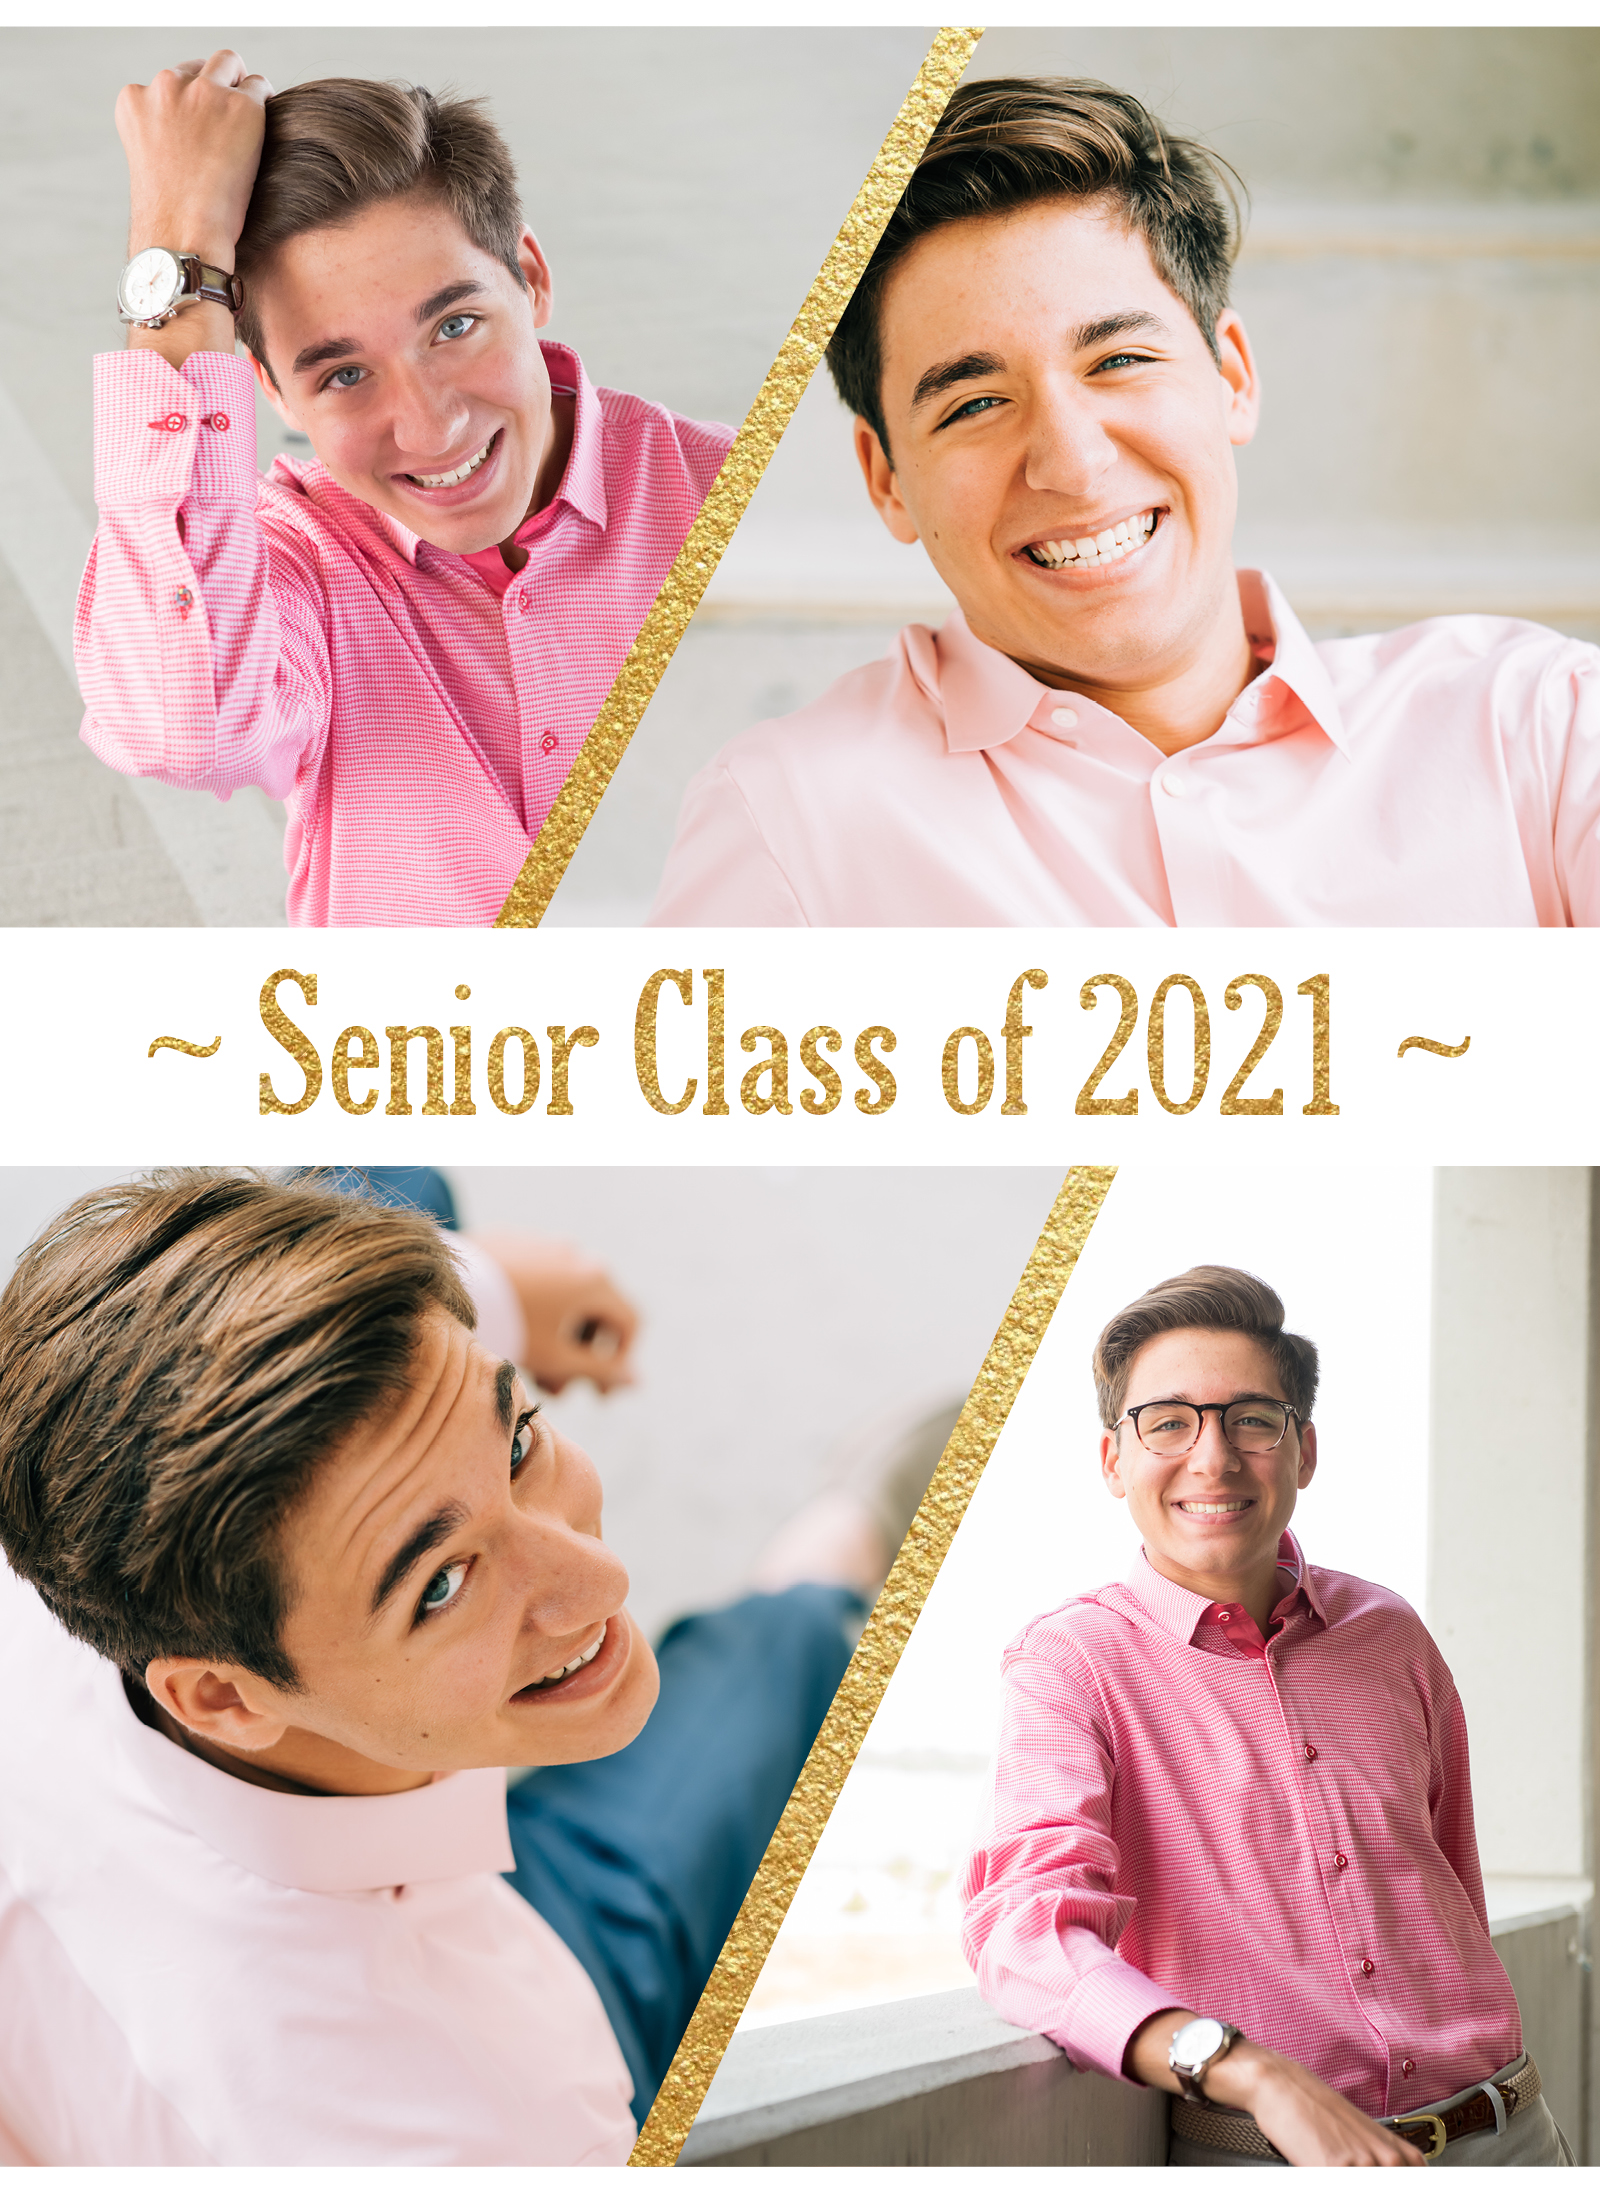 Senior Guy in Pink